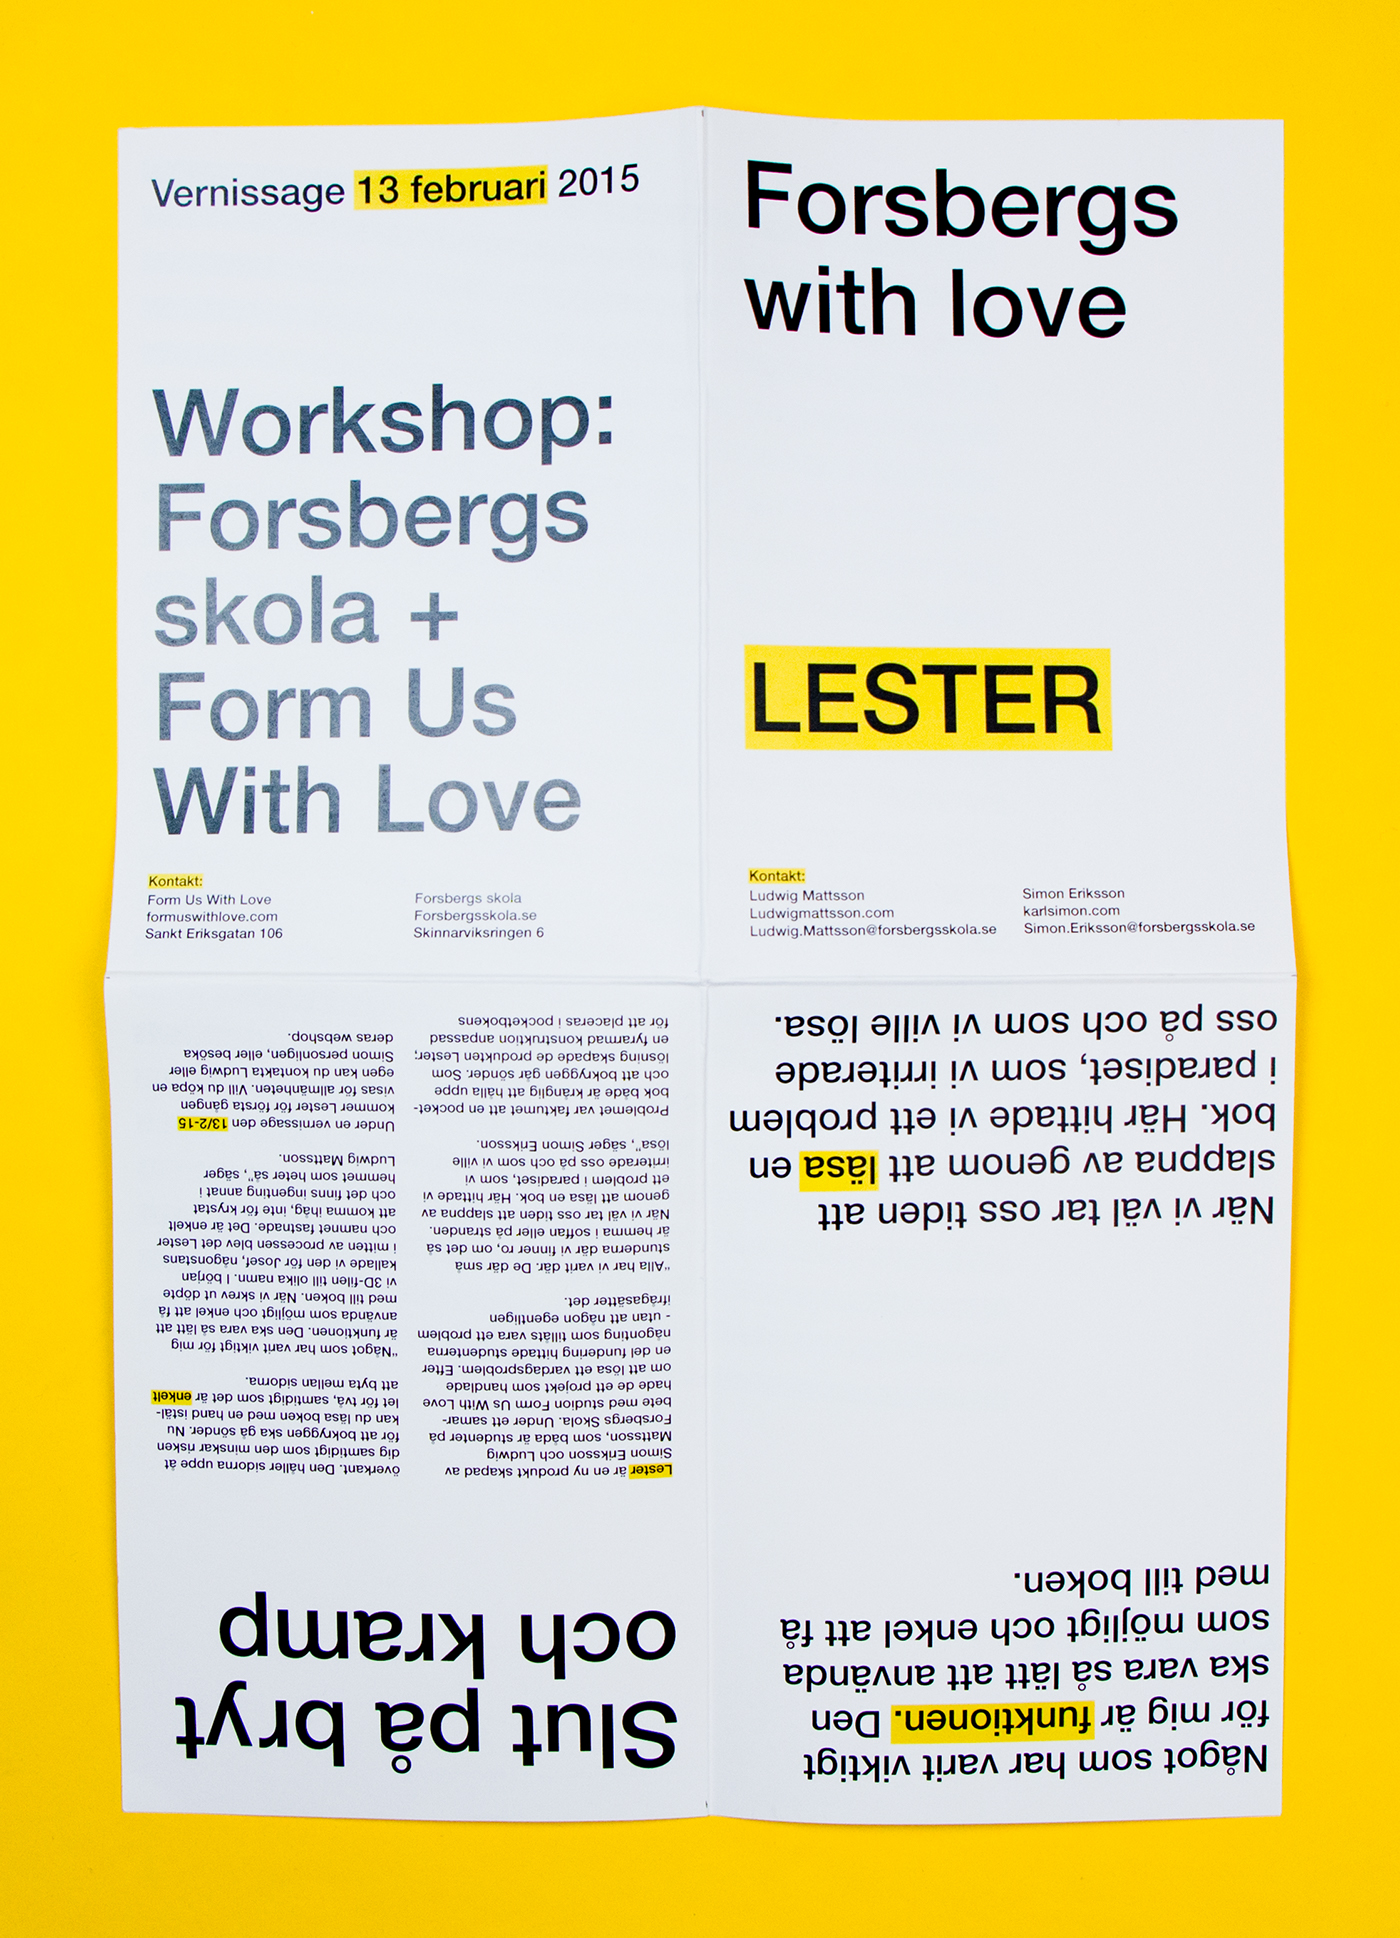 Lester book holder holder 3d print 3D design pocket book Page Holder Helvetica Neue package design  instructions poster